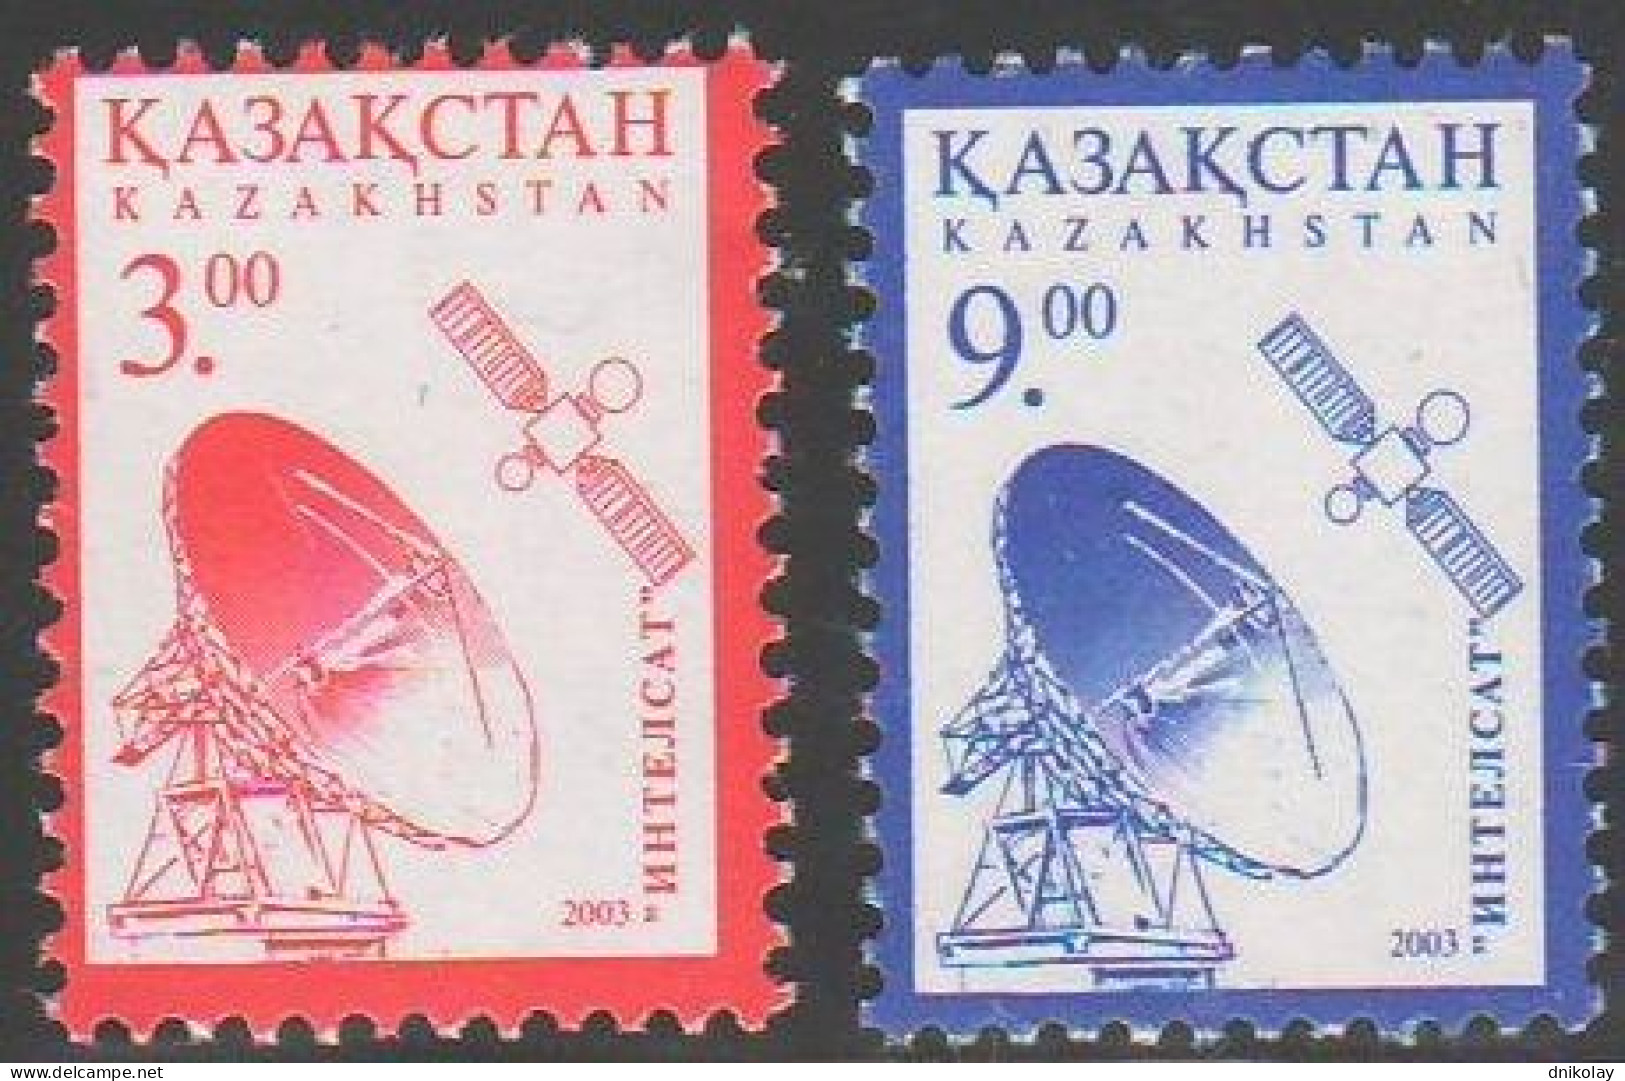 2003 441 Kazakhstan Space Satellite Station MNH - Kazakistan